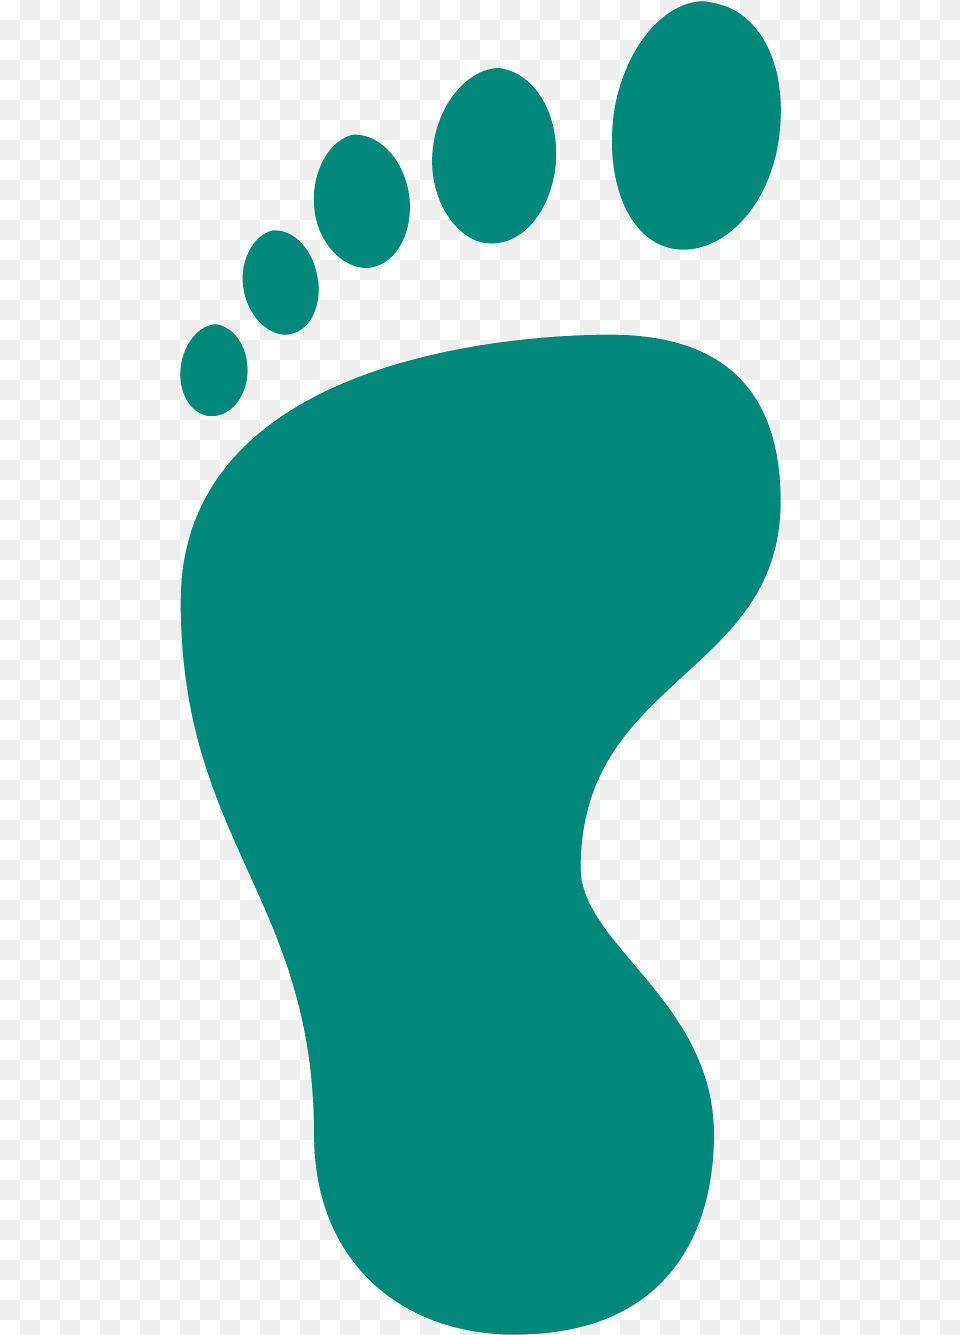 Marauders Map, Footprint, Person Png Image